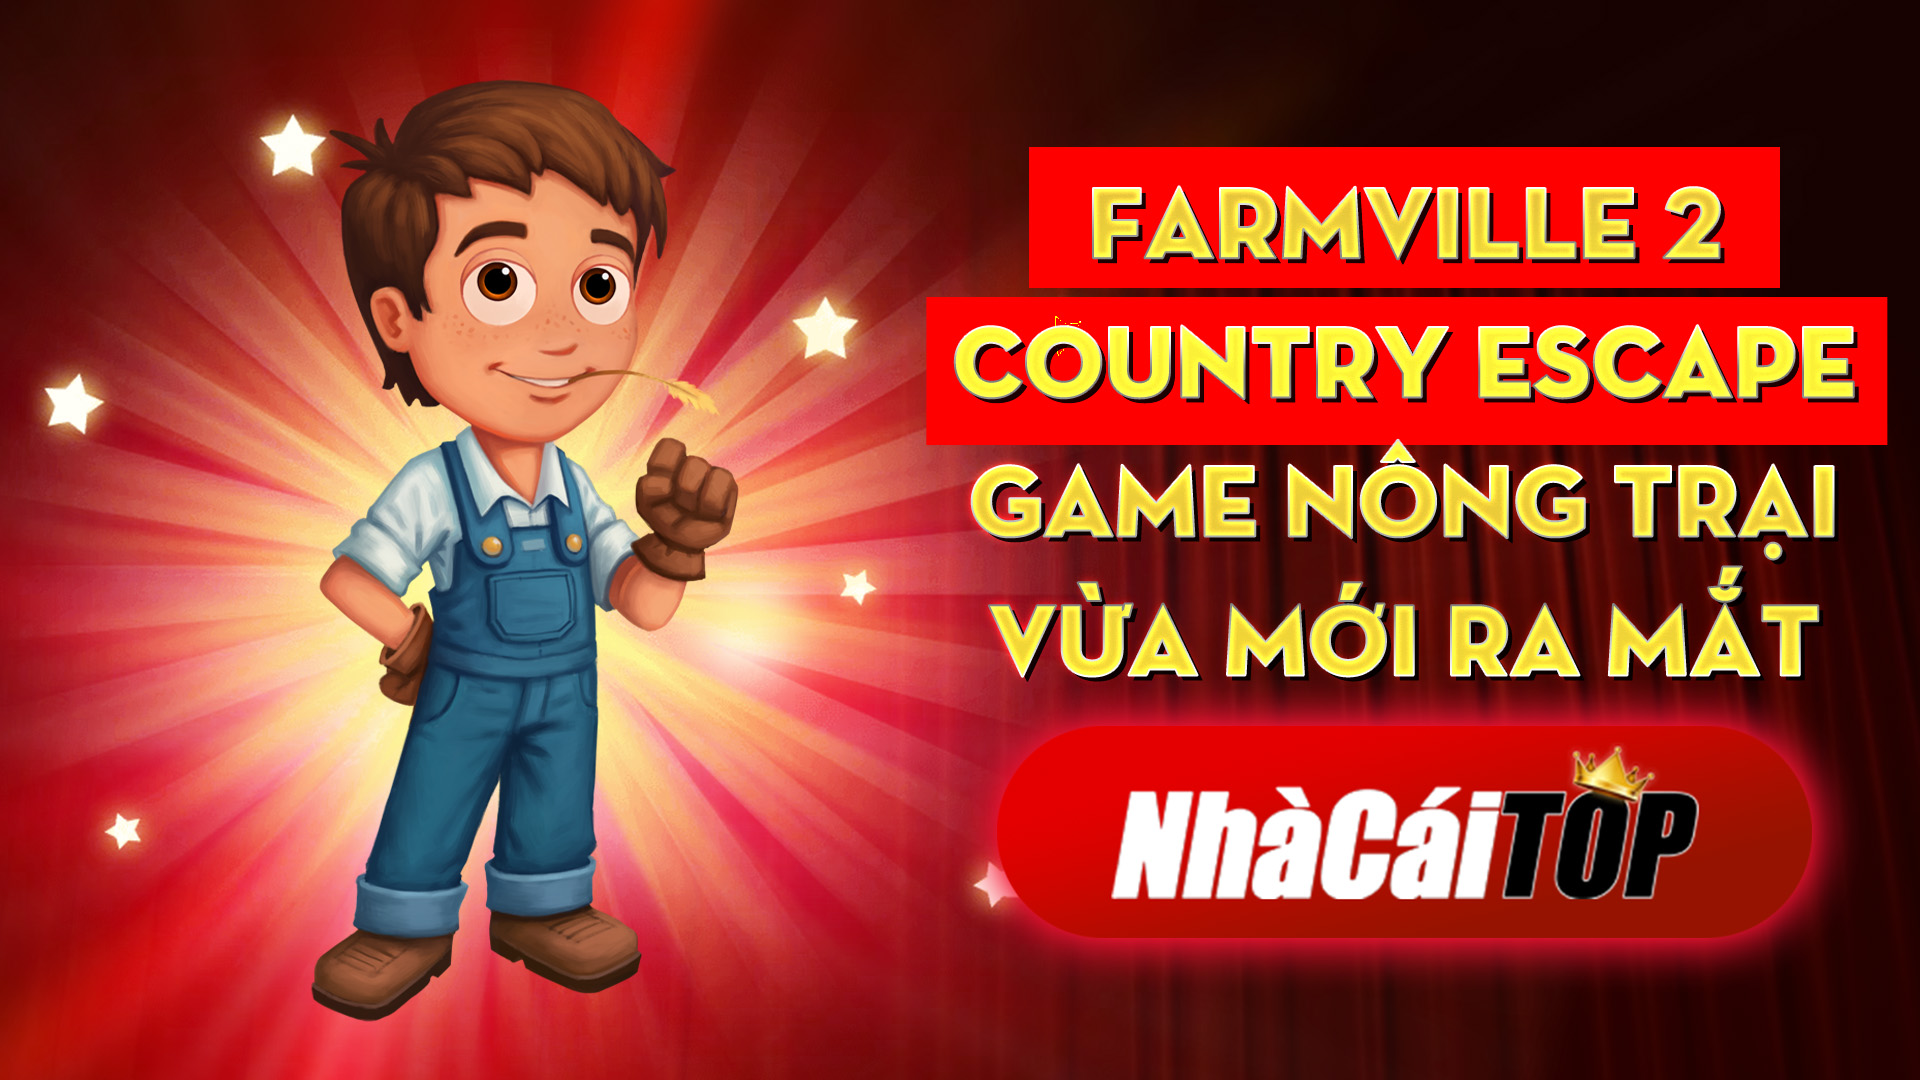 336 Farmville 2 Country Escape – Game Nong Trai Vua Moi Ra Mat